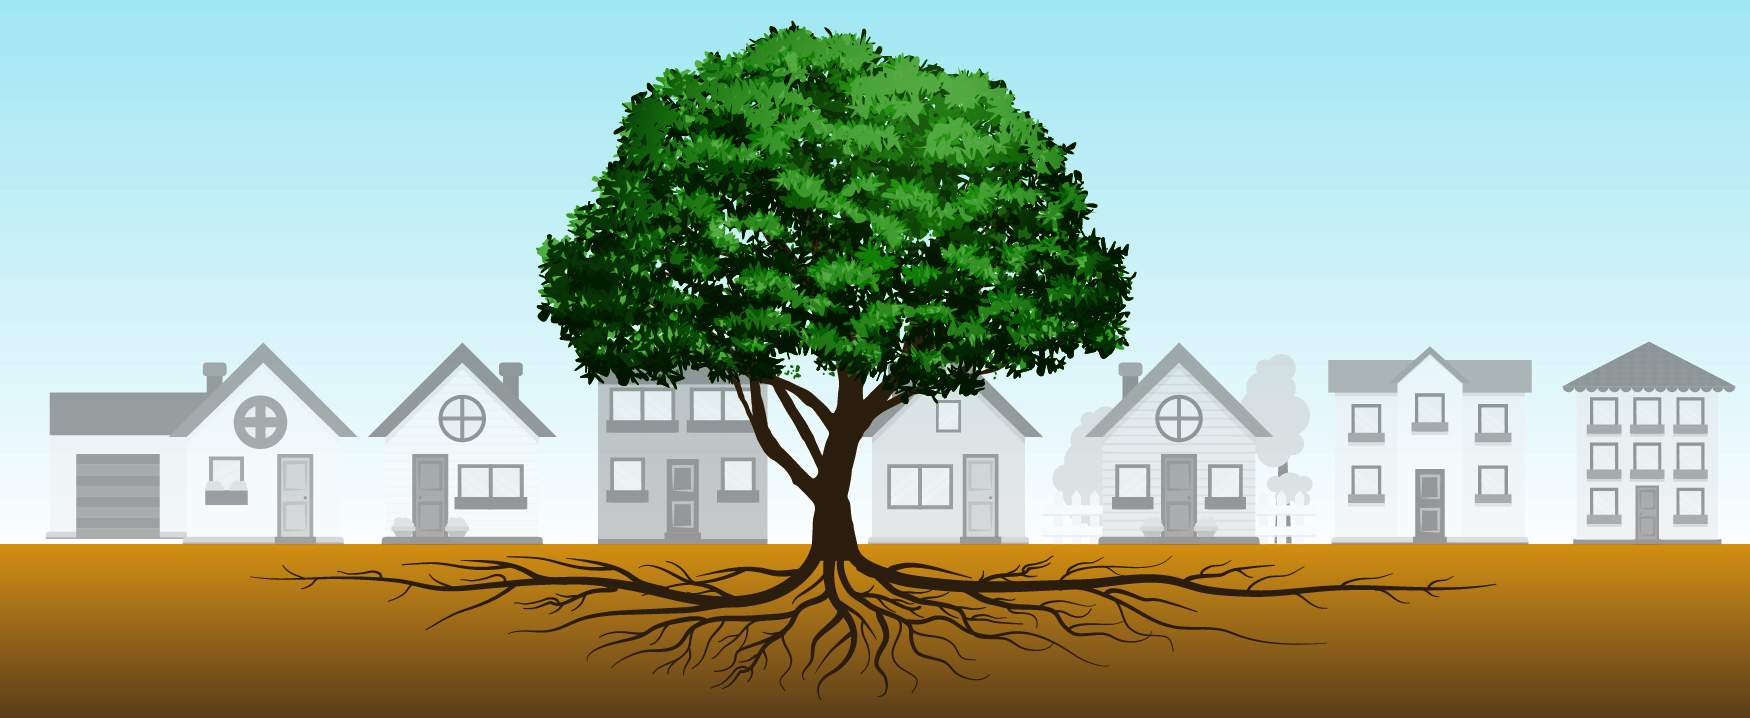 تنمو الشجرة في المنتصف أمام صف من المنازل. تنتشر جذور الشجرة تحت الأرض، لتمتد عرض صف المنازل في كلا الاتجاهين.